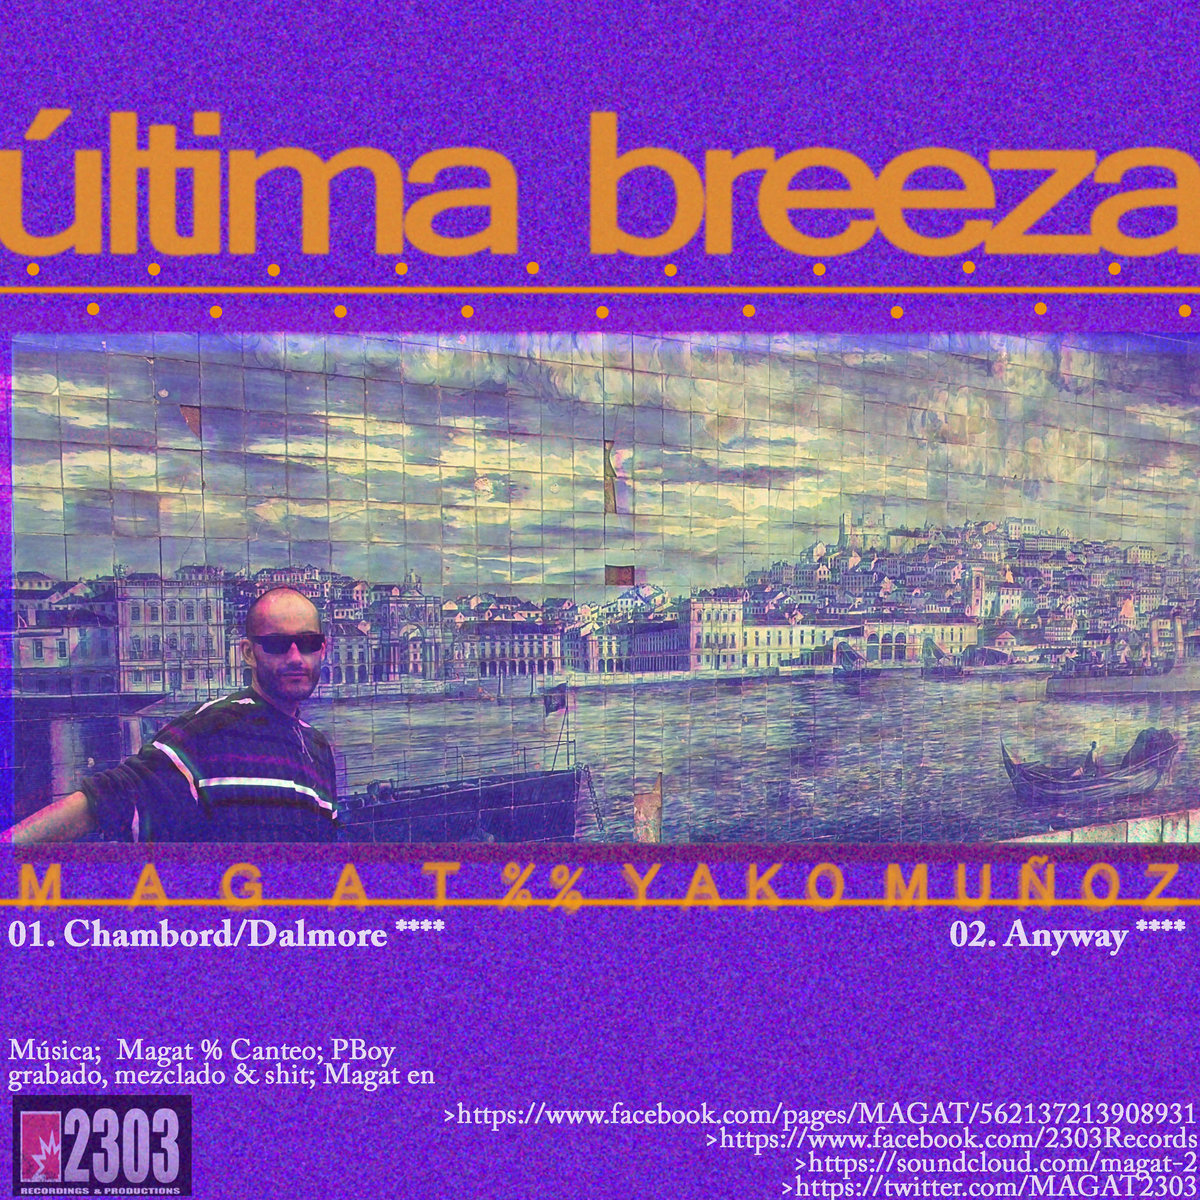 _ltima_breeza_yako_mu_oz